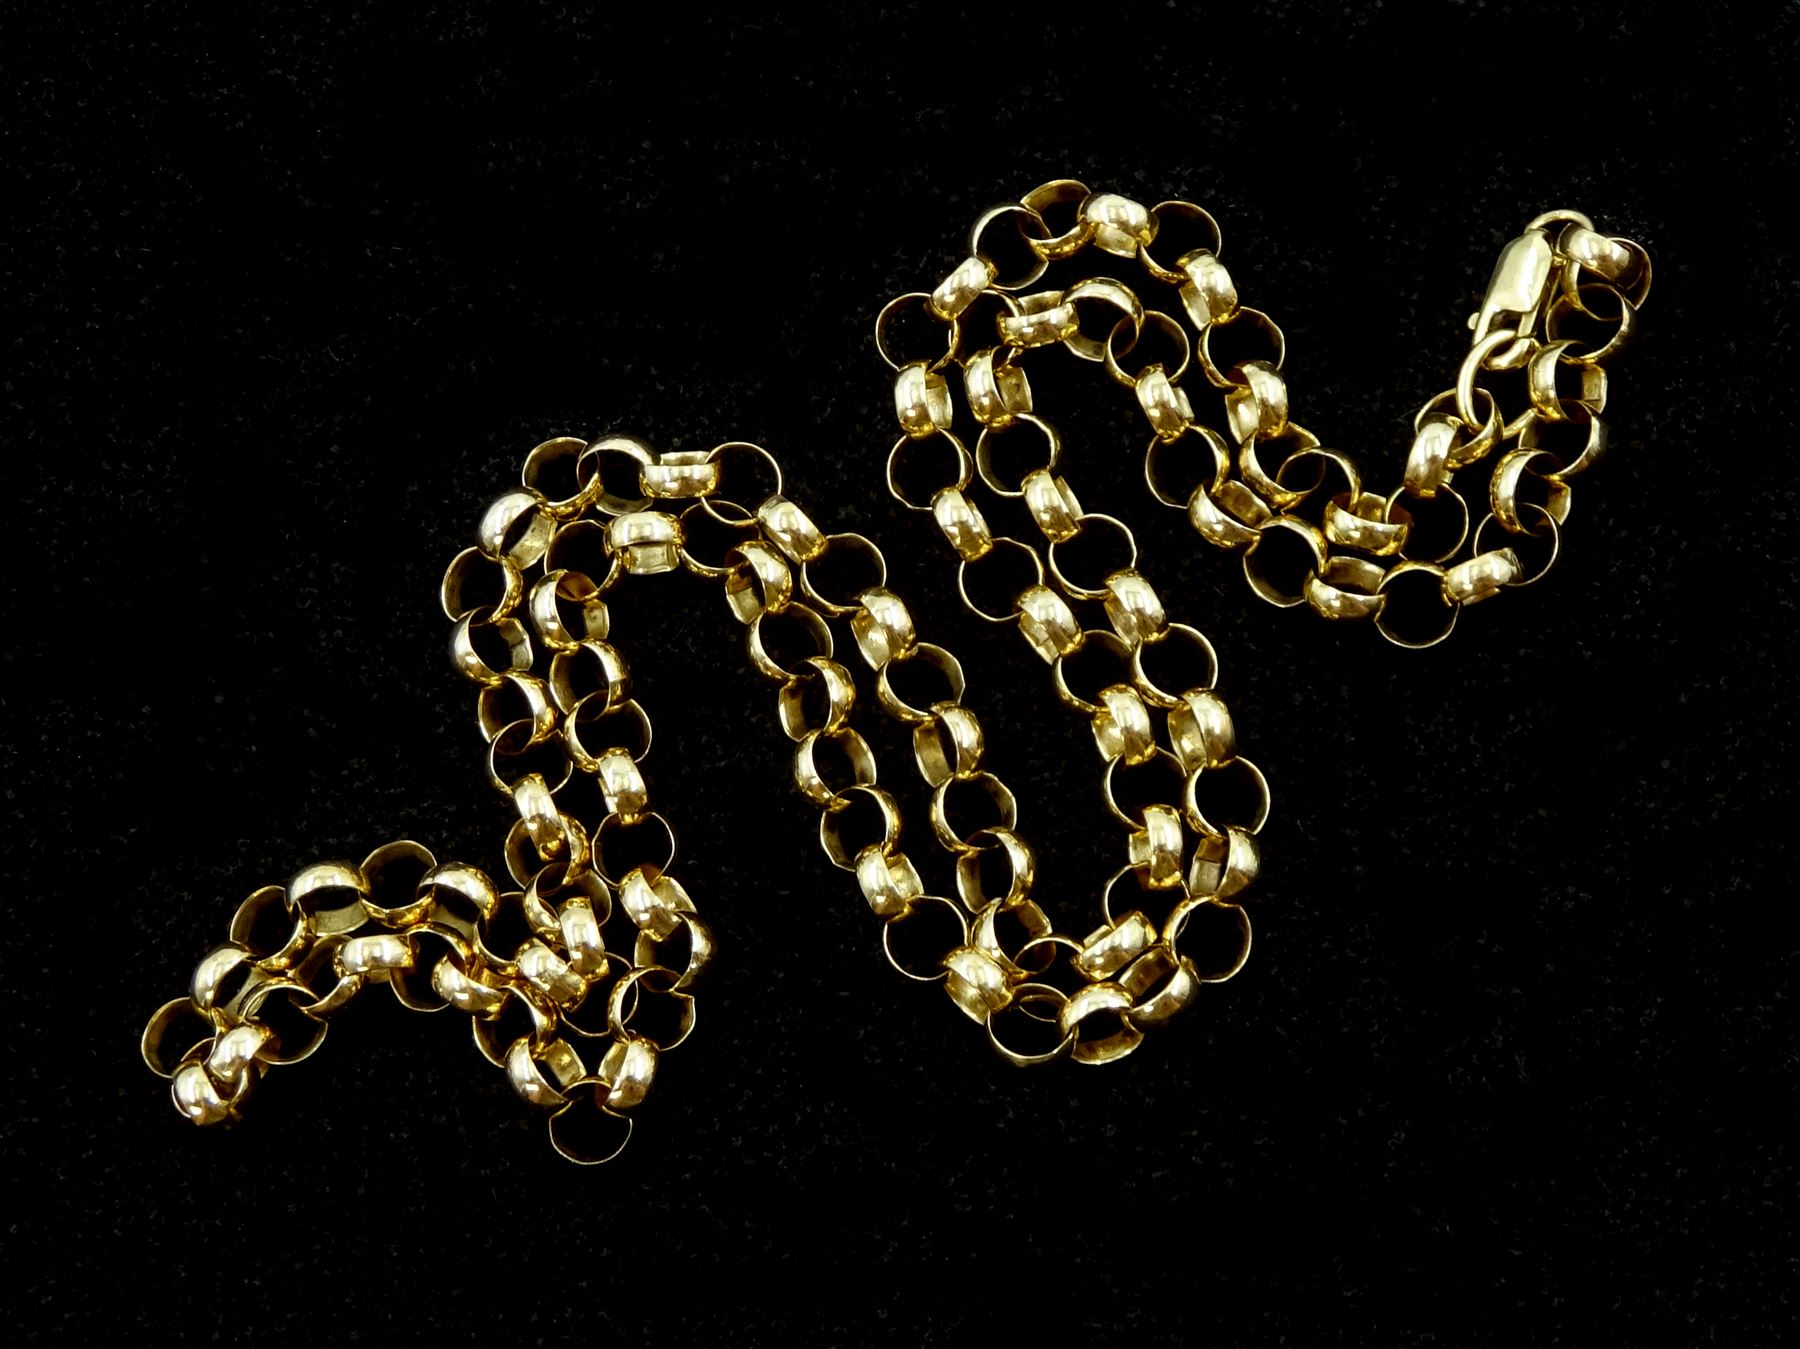 9ct gold belcher link necklace - Image 2 of 2